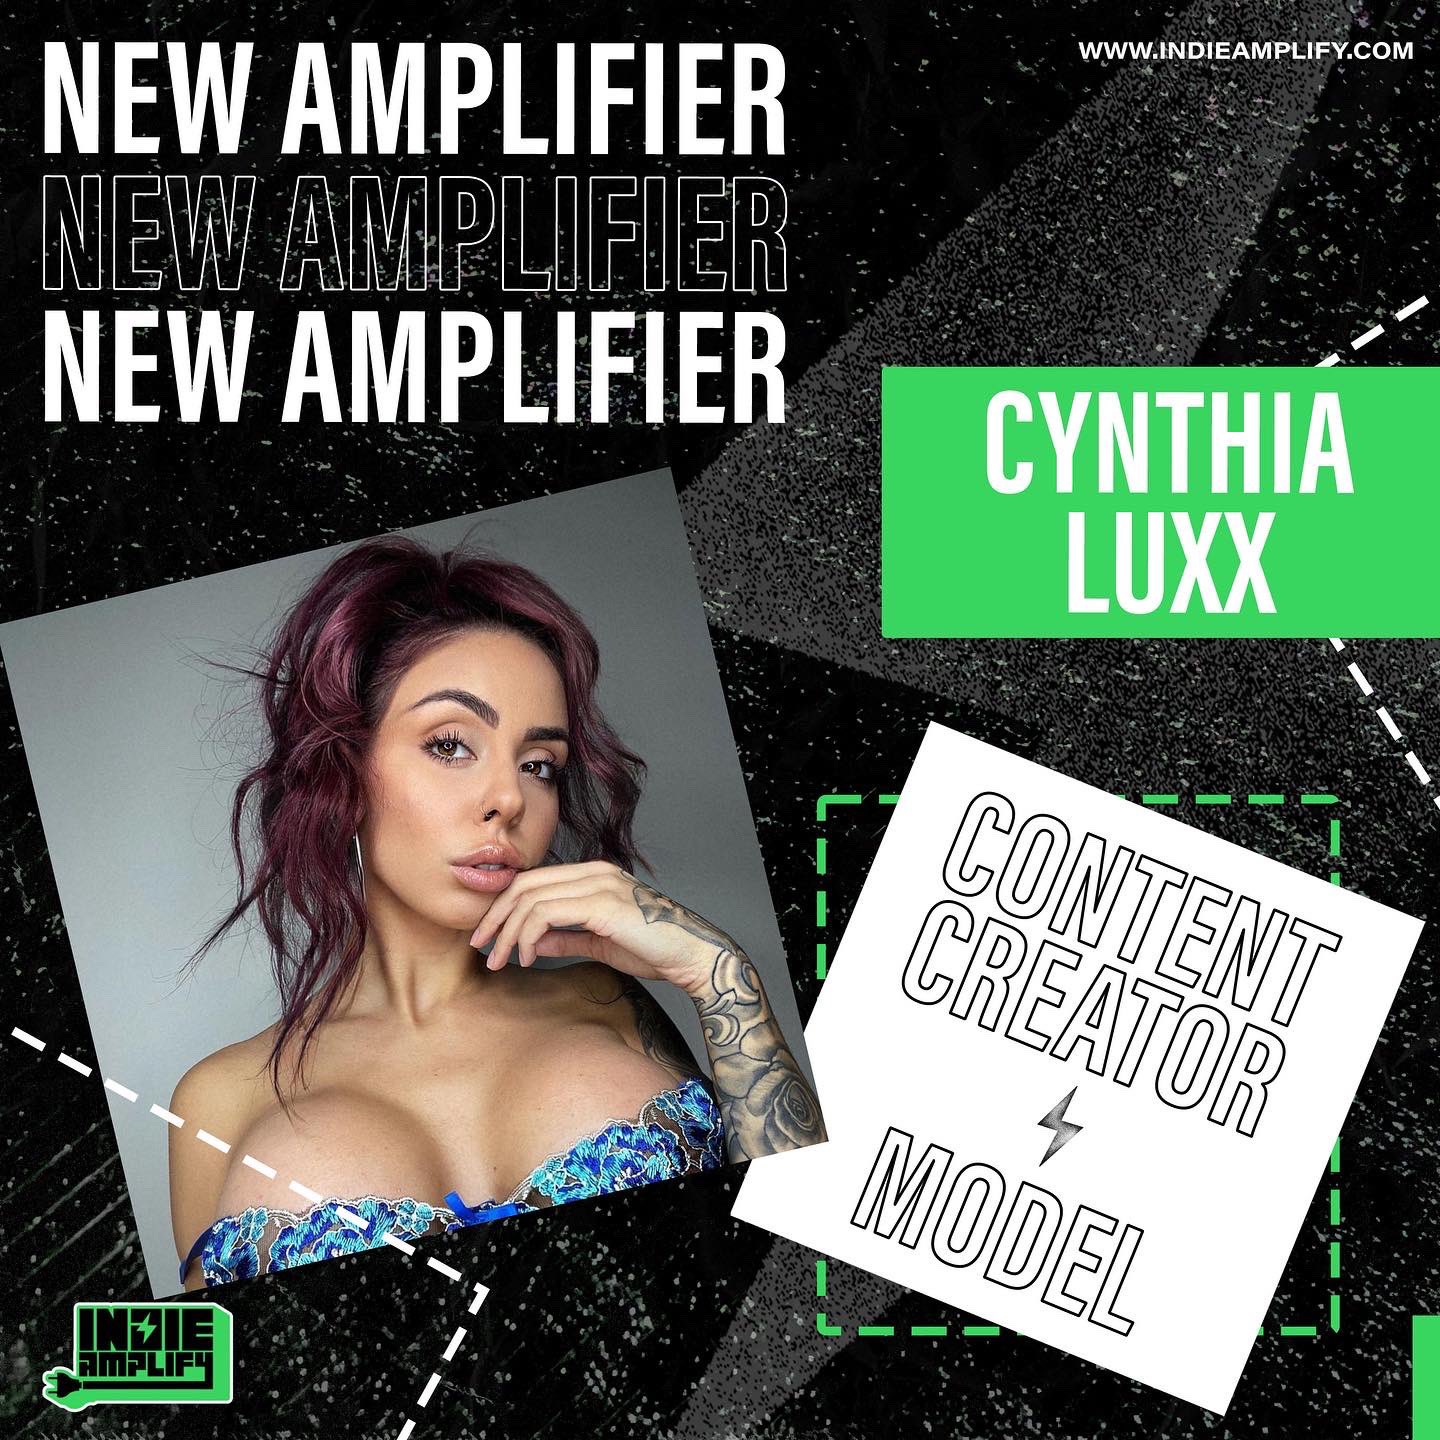 Cynthia luxx